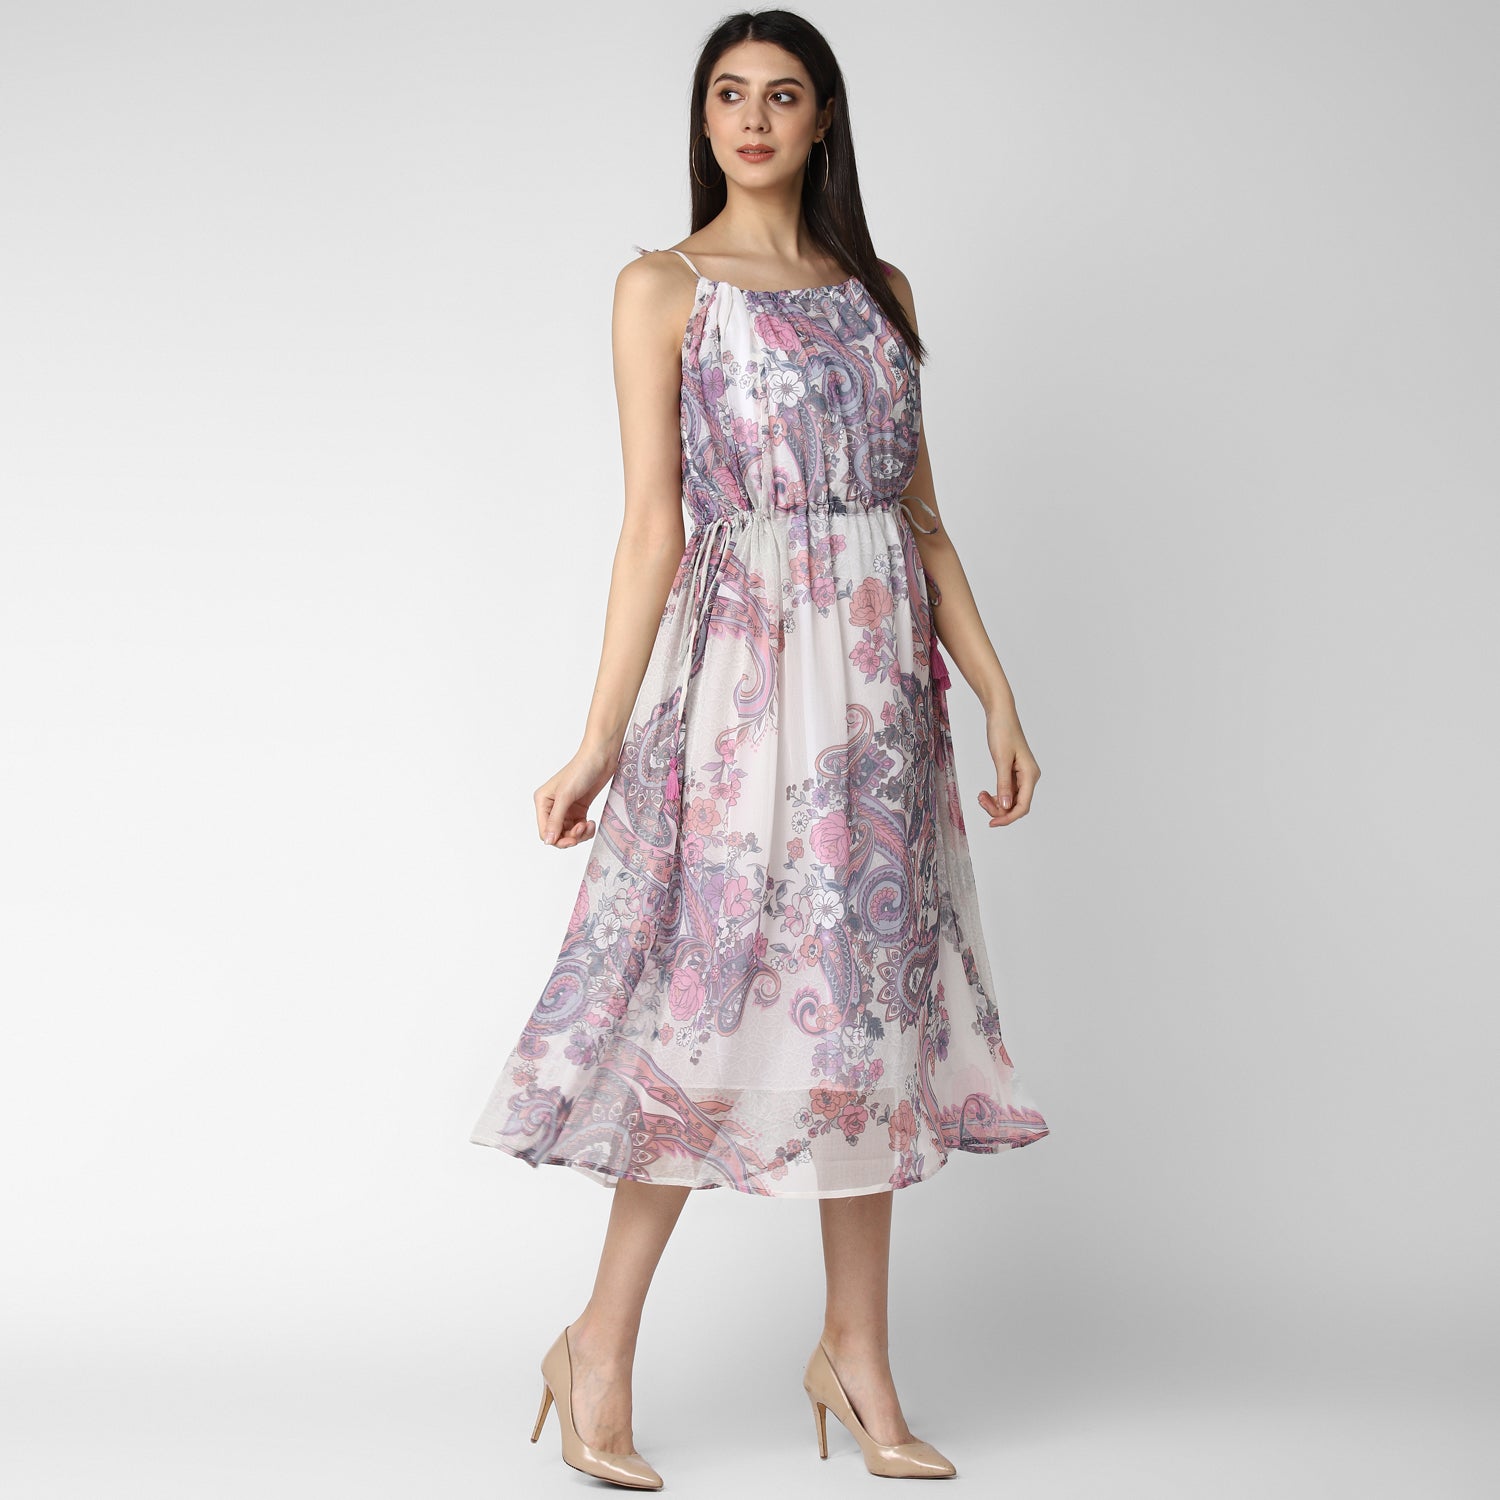 Women's Pink and Lavender Chiffon Tieup Dress - StyleStone